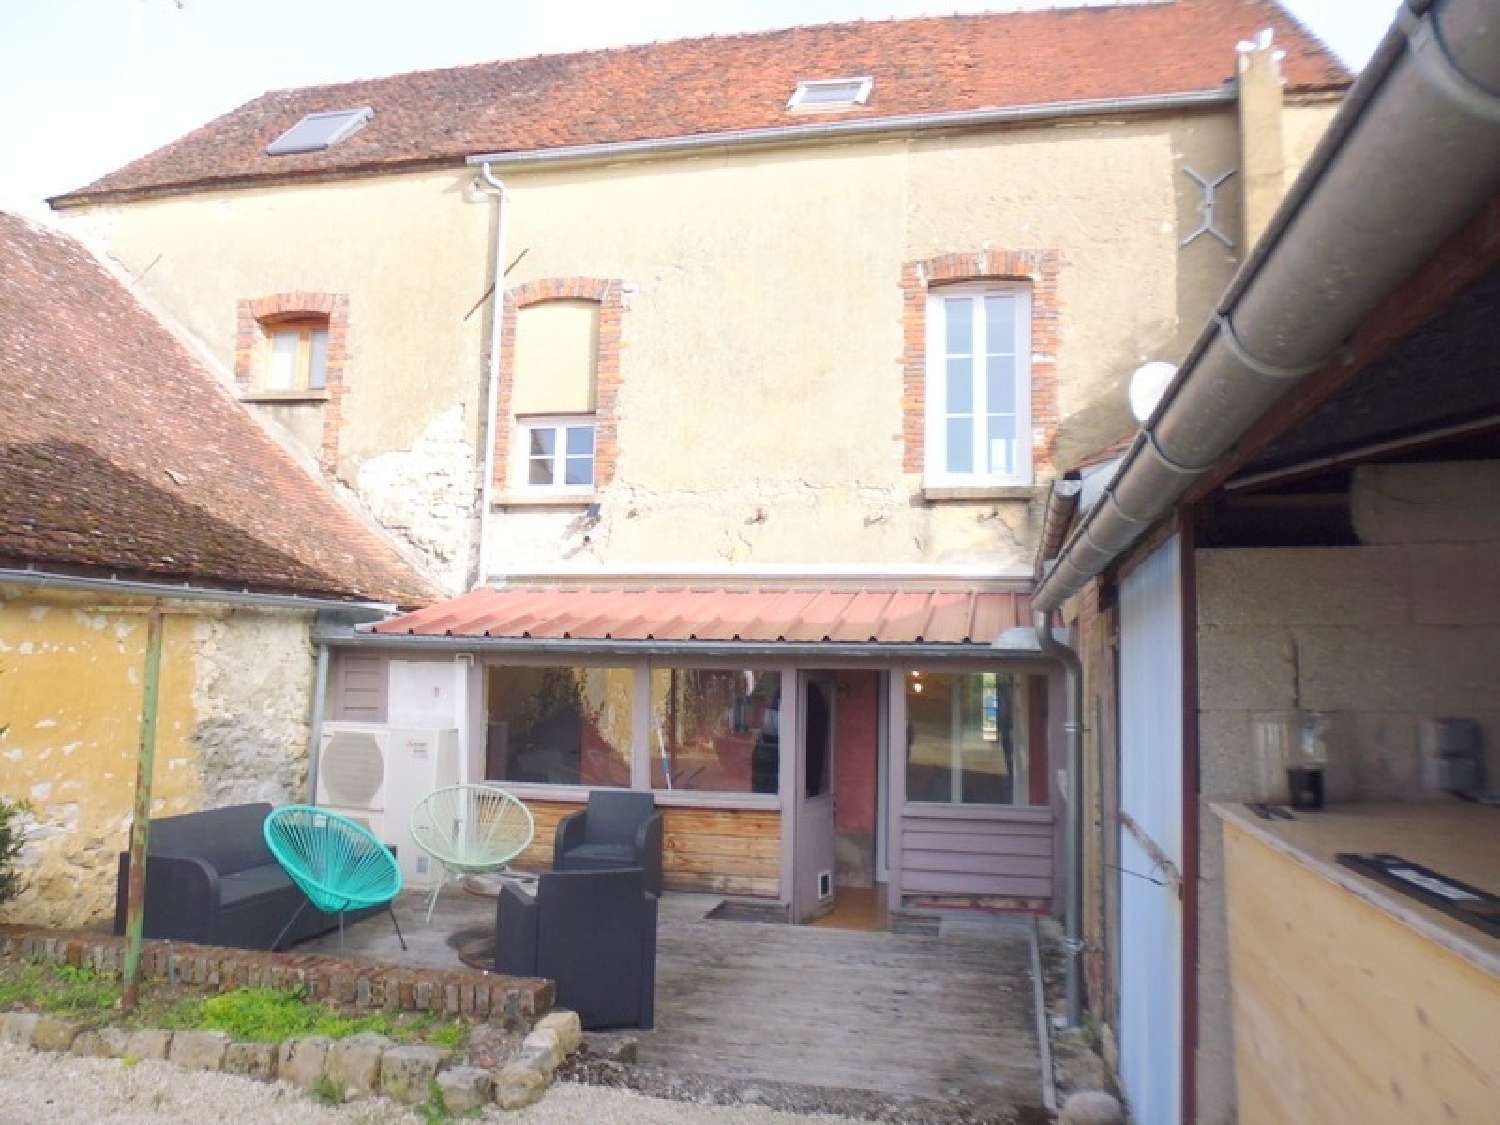  à vendre maison de village Avrolles Yonne 4